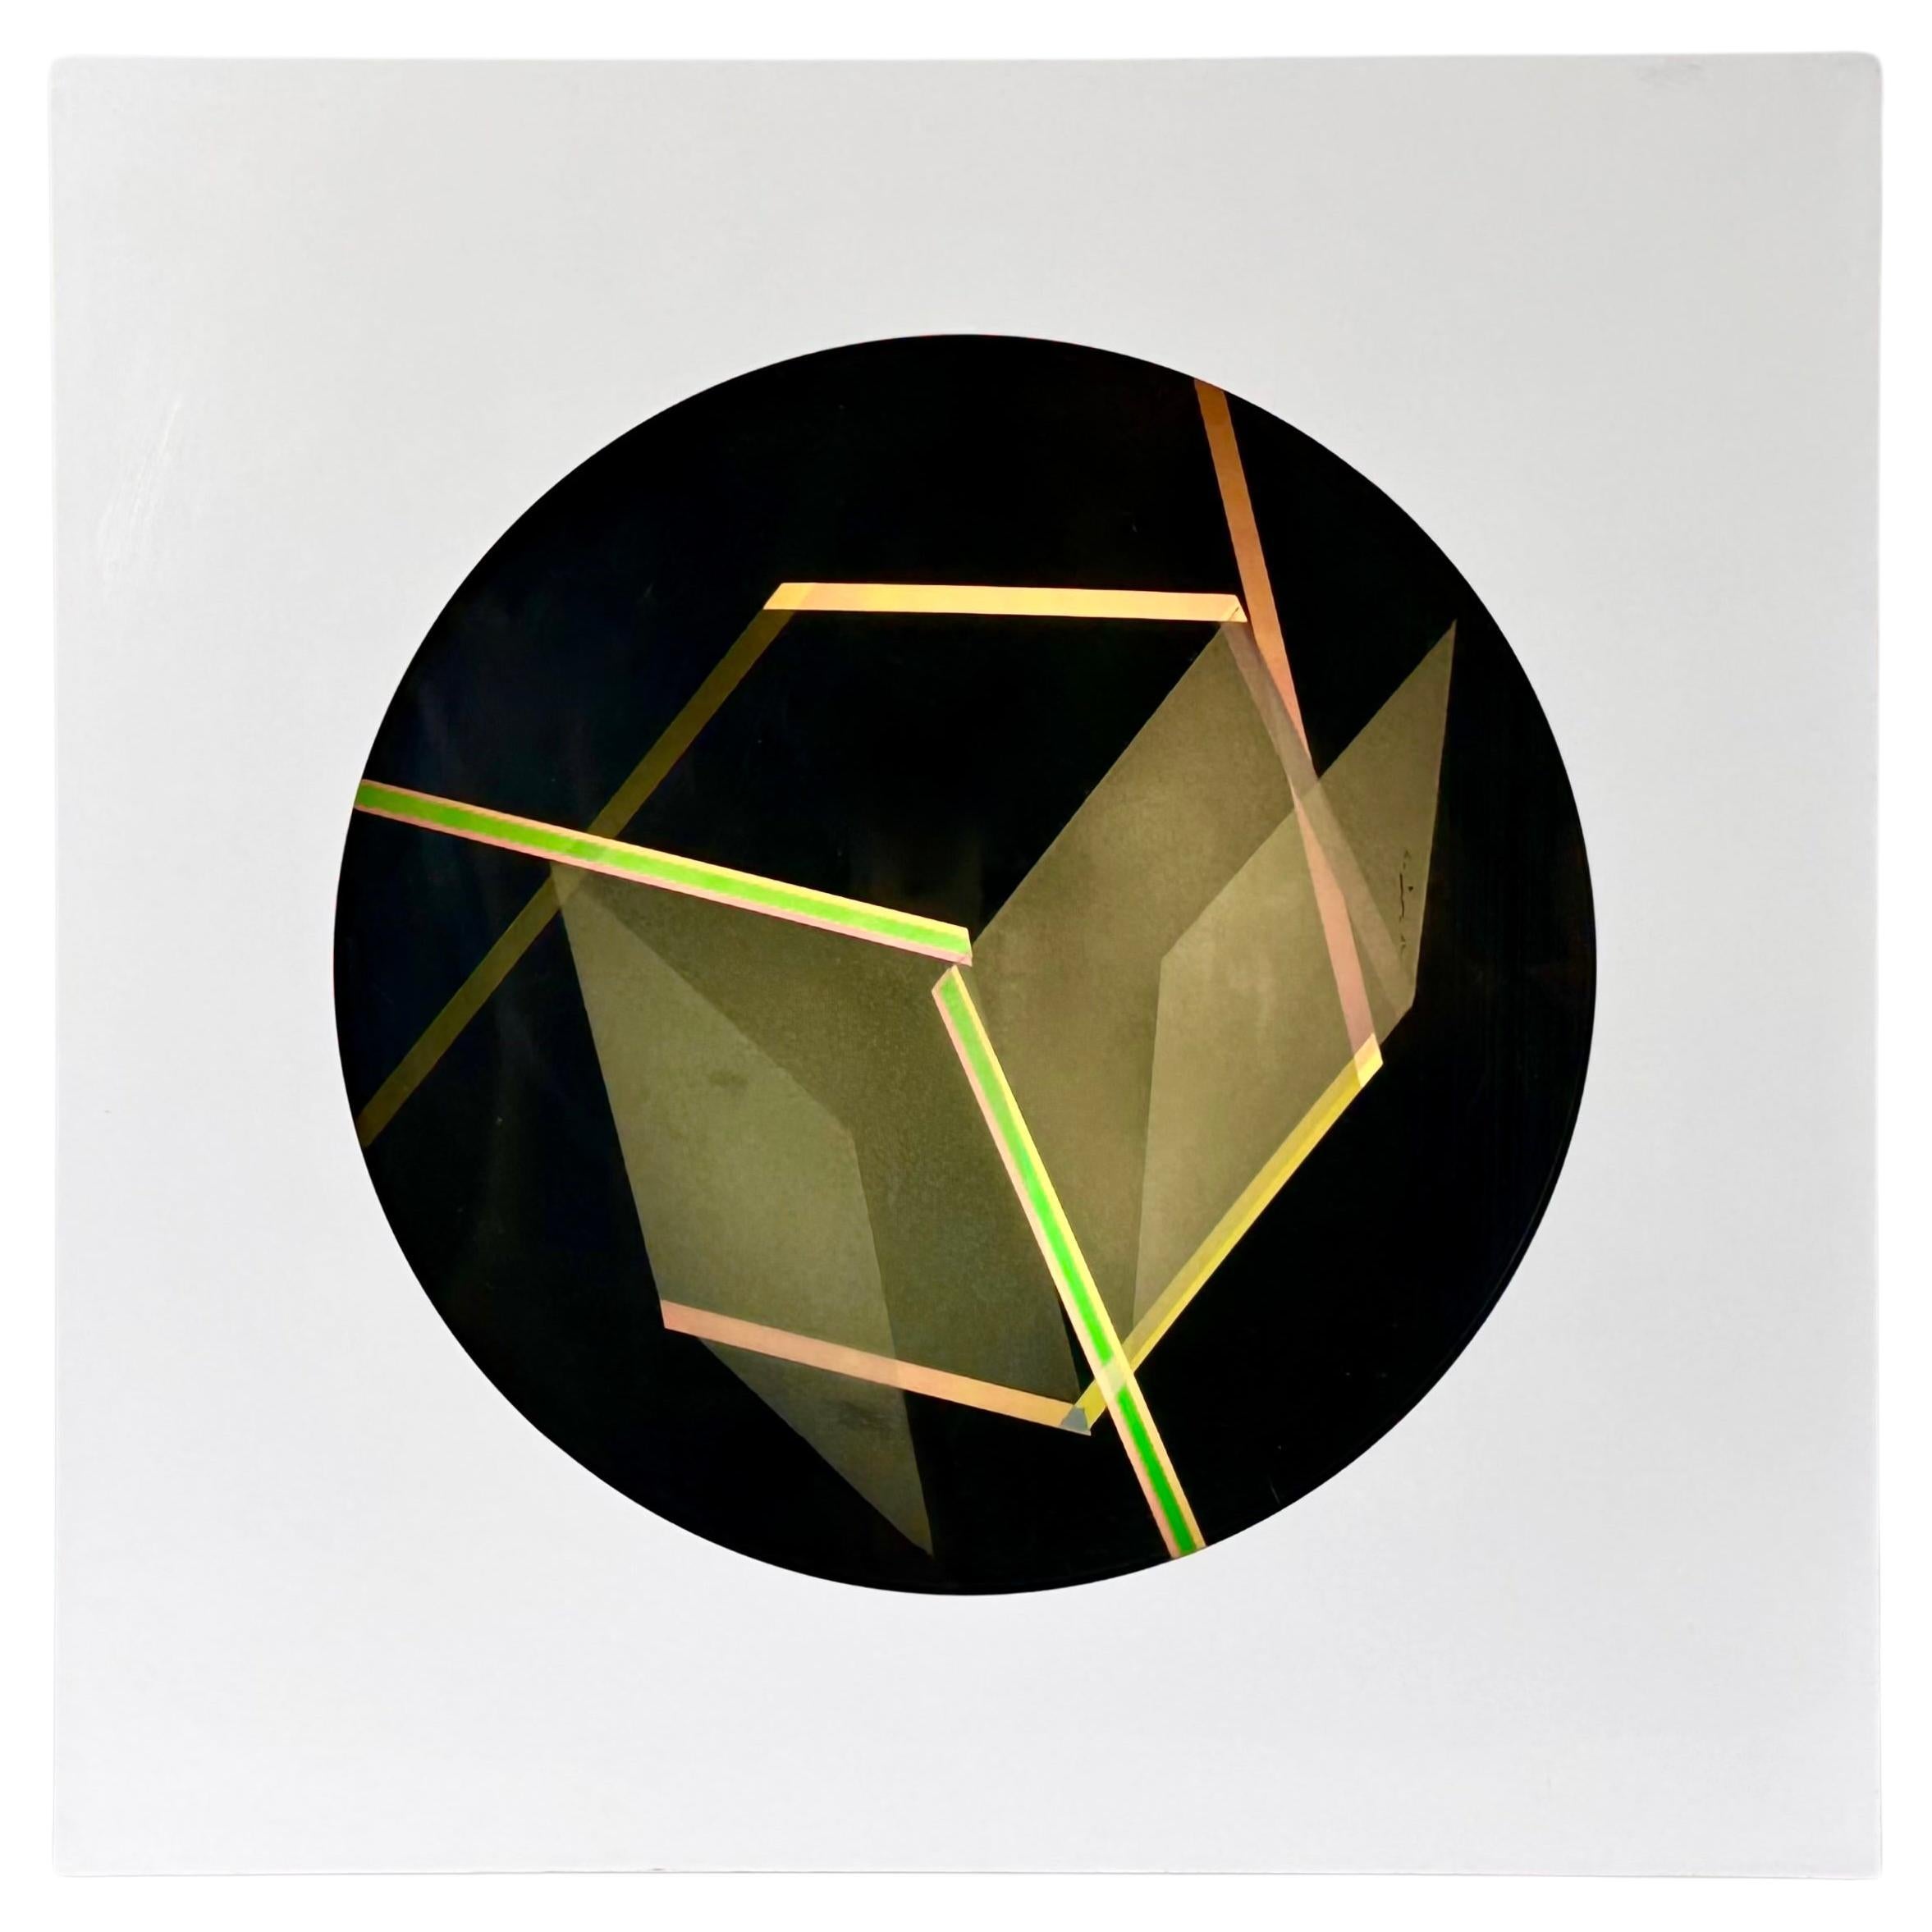 Helen Gilbert Contemporary Modern Op Art Kinetic Light Box Sculpture 1984